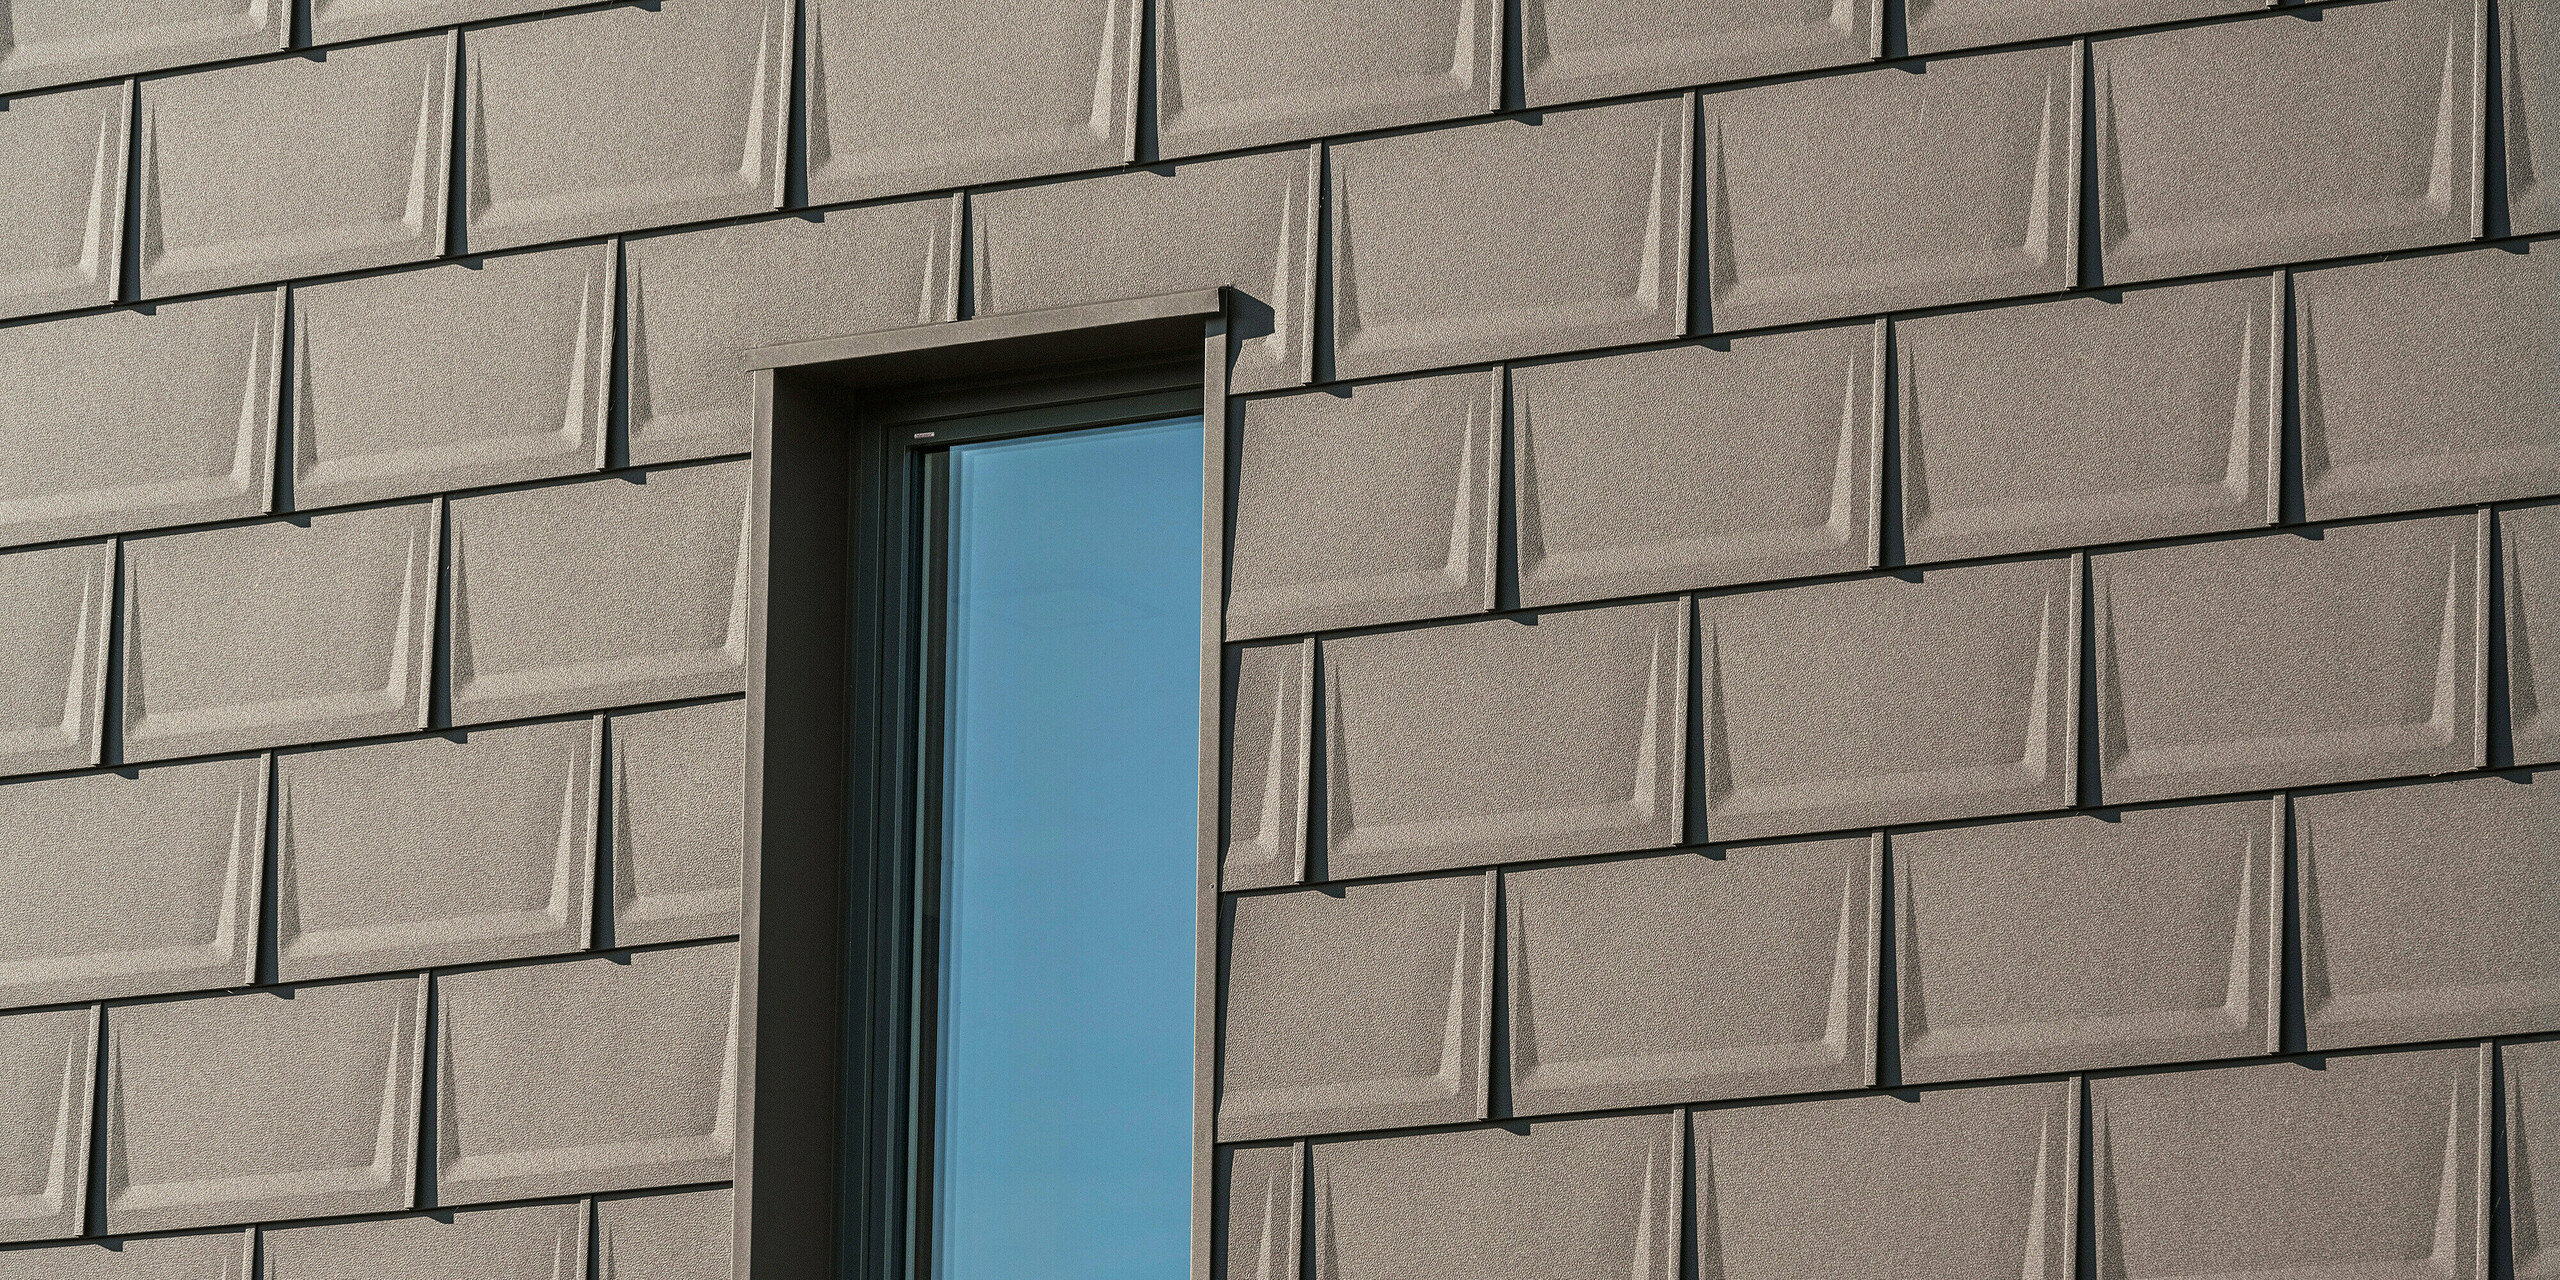 Detailaufnahme eines Fensters an der Fassade eines Einfamilienhauses in Neukirchen, Österreich, akzentuiert durch die PREFA Dachplatte R.16 in P.10 Braun. Die einheitliche Verlegung der Platten schafft eine dynamische Textur und verleiht der Hausfassade einen modernen Charakter. Die Präzision der Installation und die harmonische Farbabstimmung unterstreichen das qualitätsbewusste Baudesign, das für PREFA Aluminiumprodukte steht.